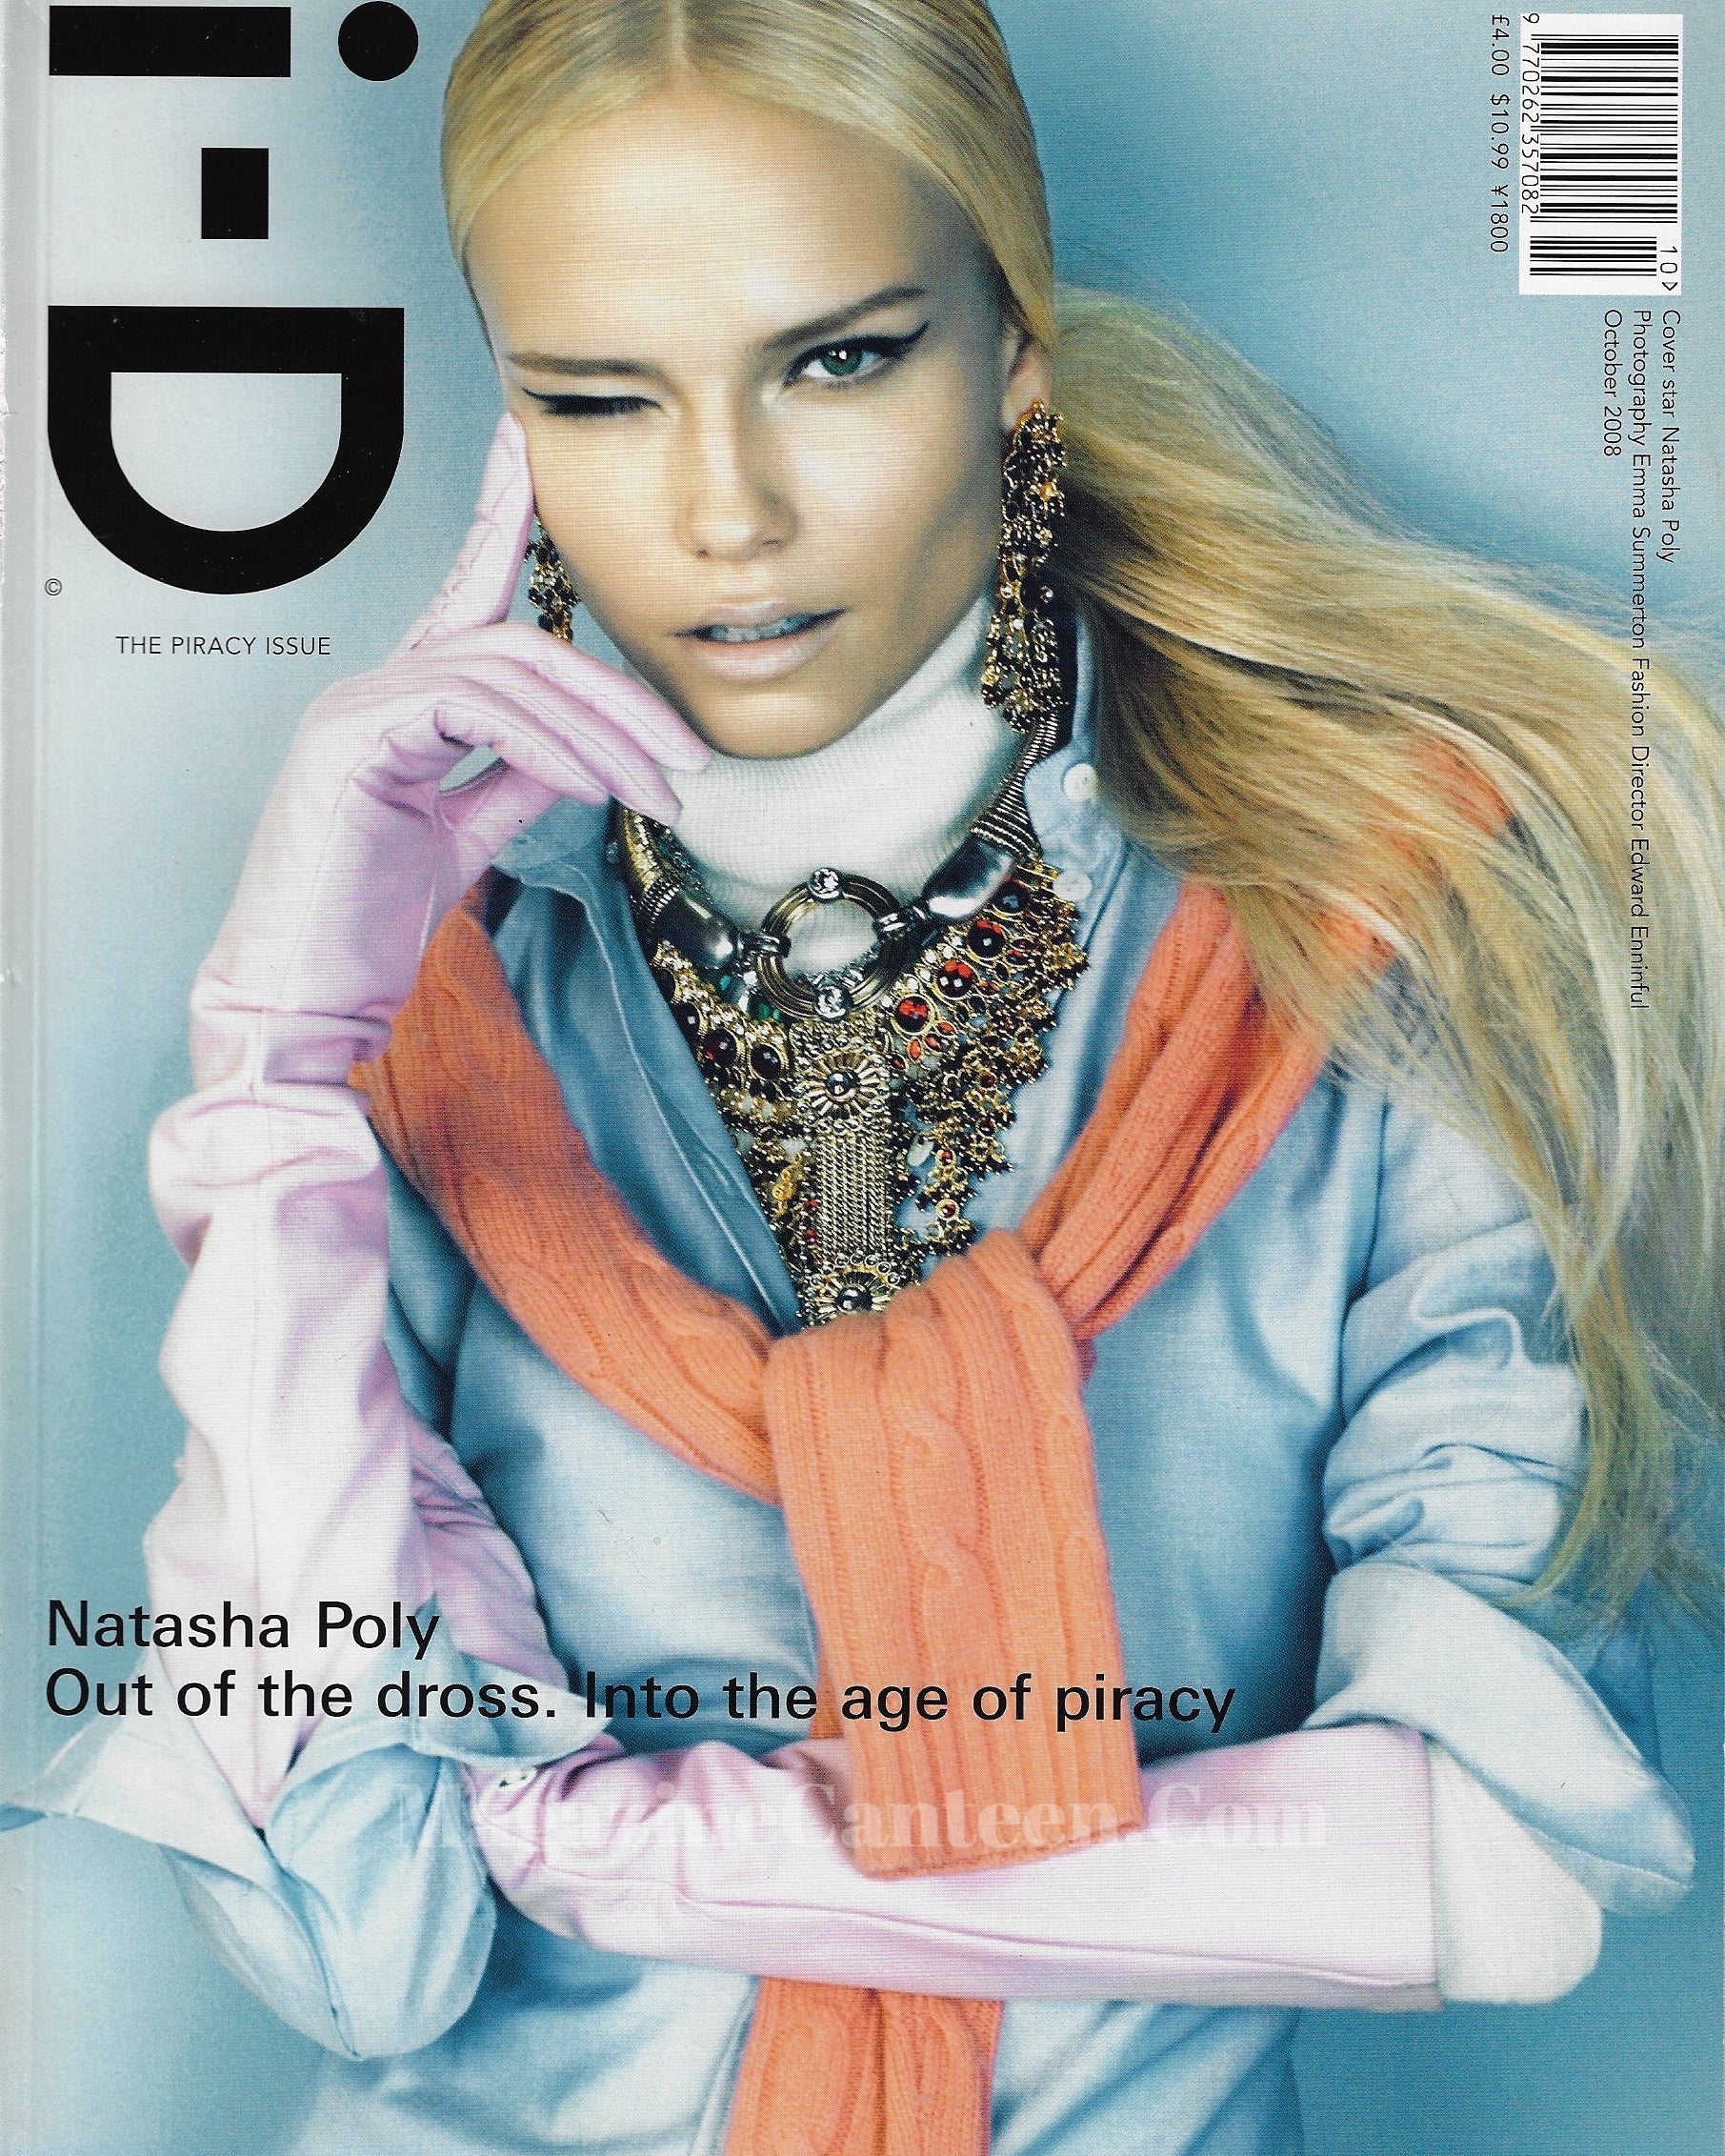 I-D Magazine 292 - Natasha Poly 2008